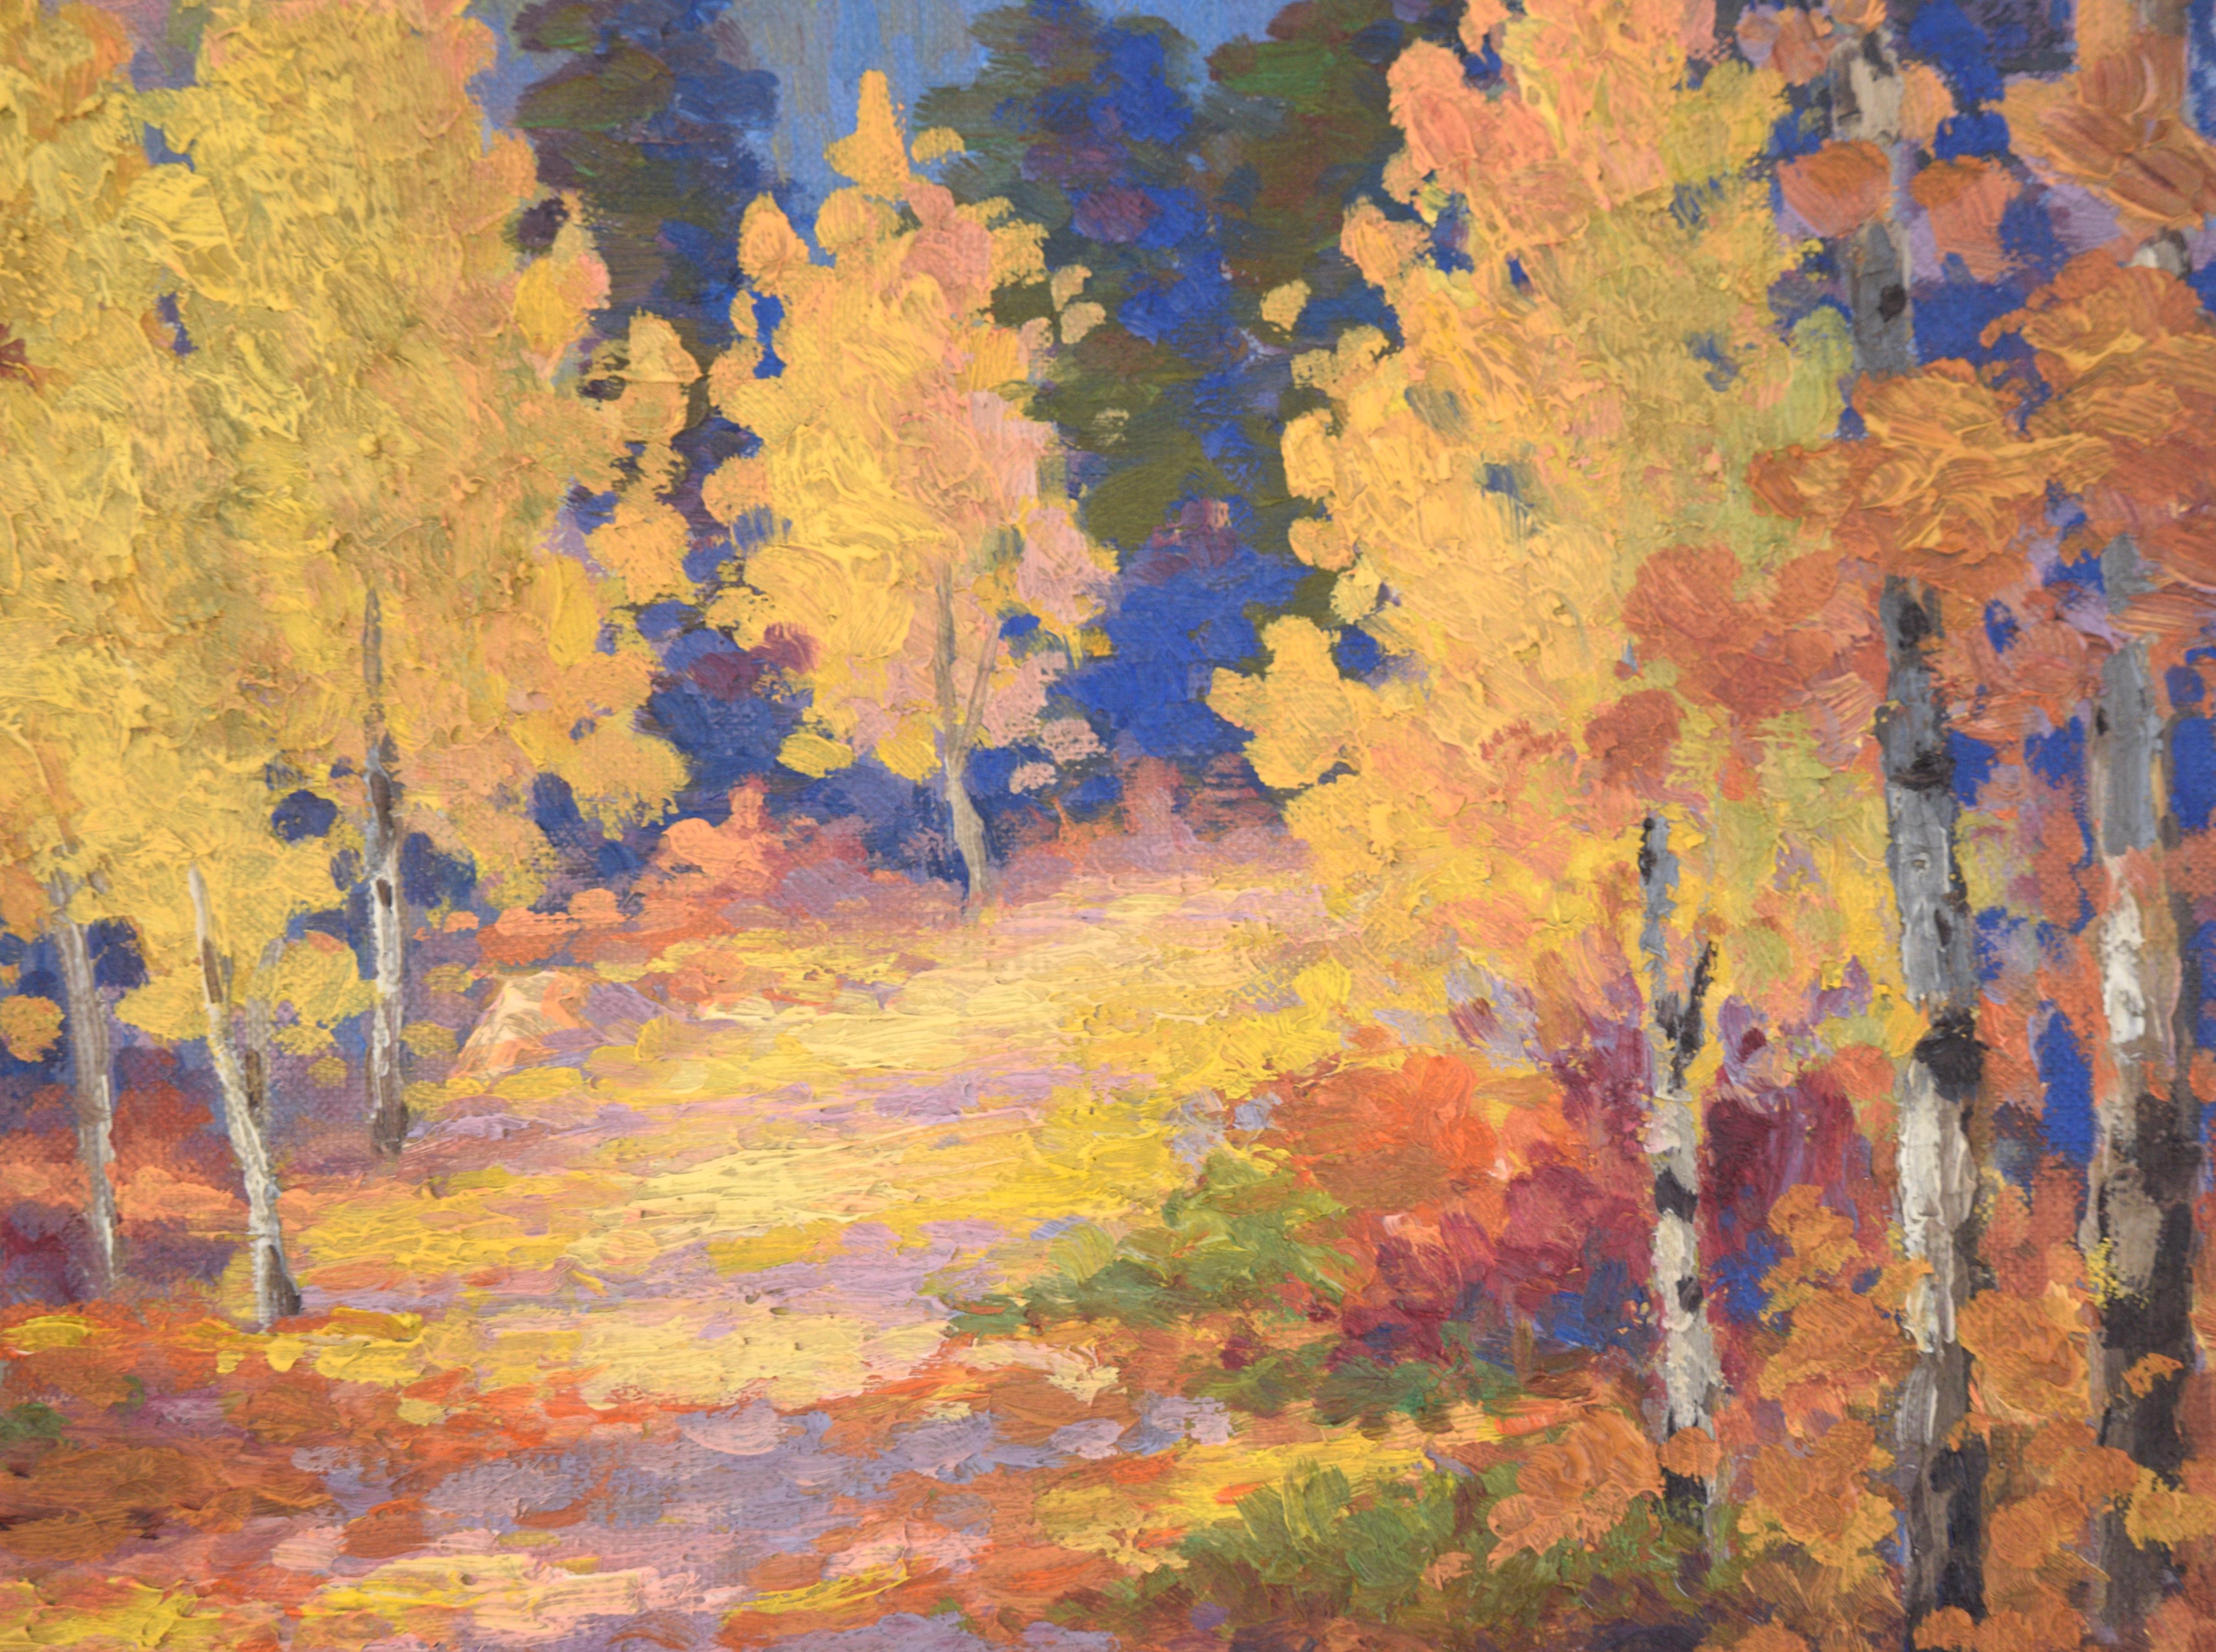 Fallen Leaves on the Path at Estes Park, Colorado - Autumn Landscape 1940 - Brown Landscape Painting by MC Brown